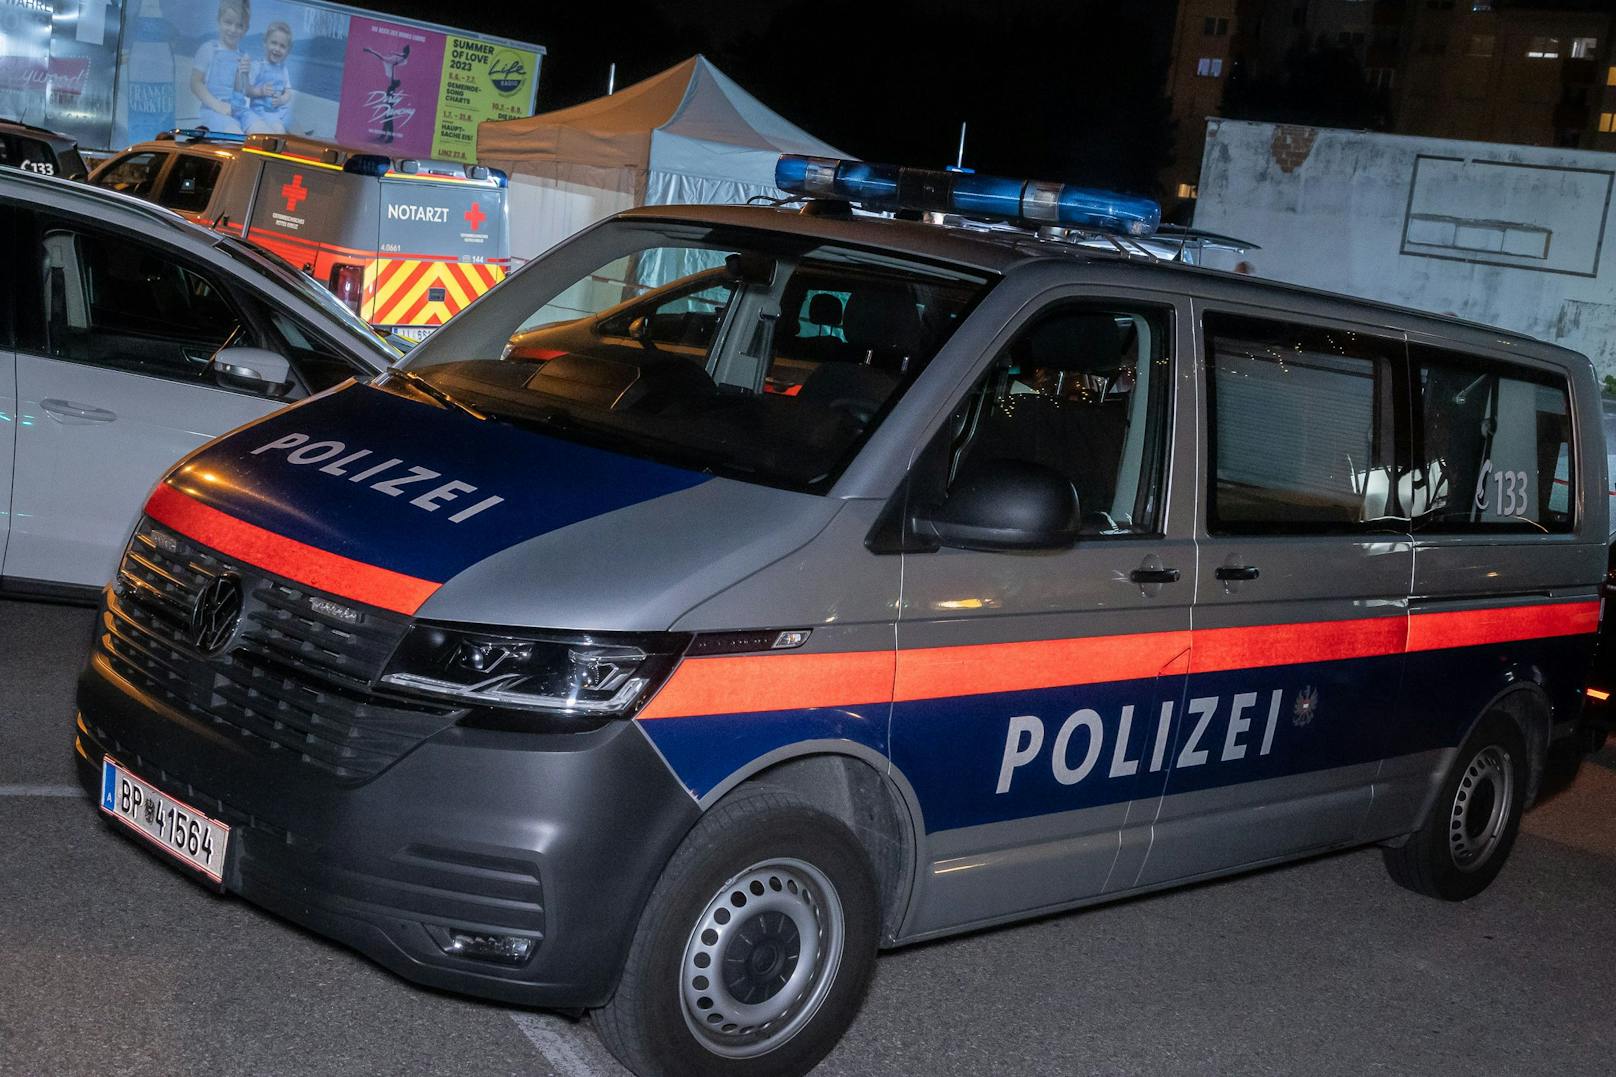 In der Nähe von Linz wurde in einem Auto eine Frauenleiche gefunden.